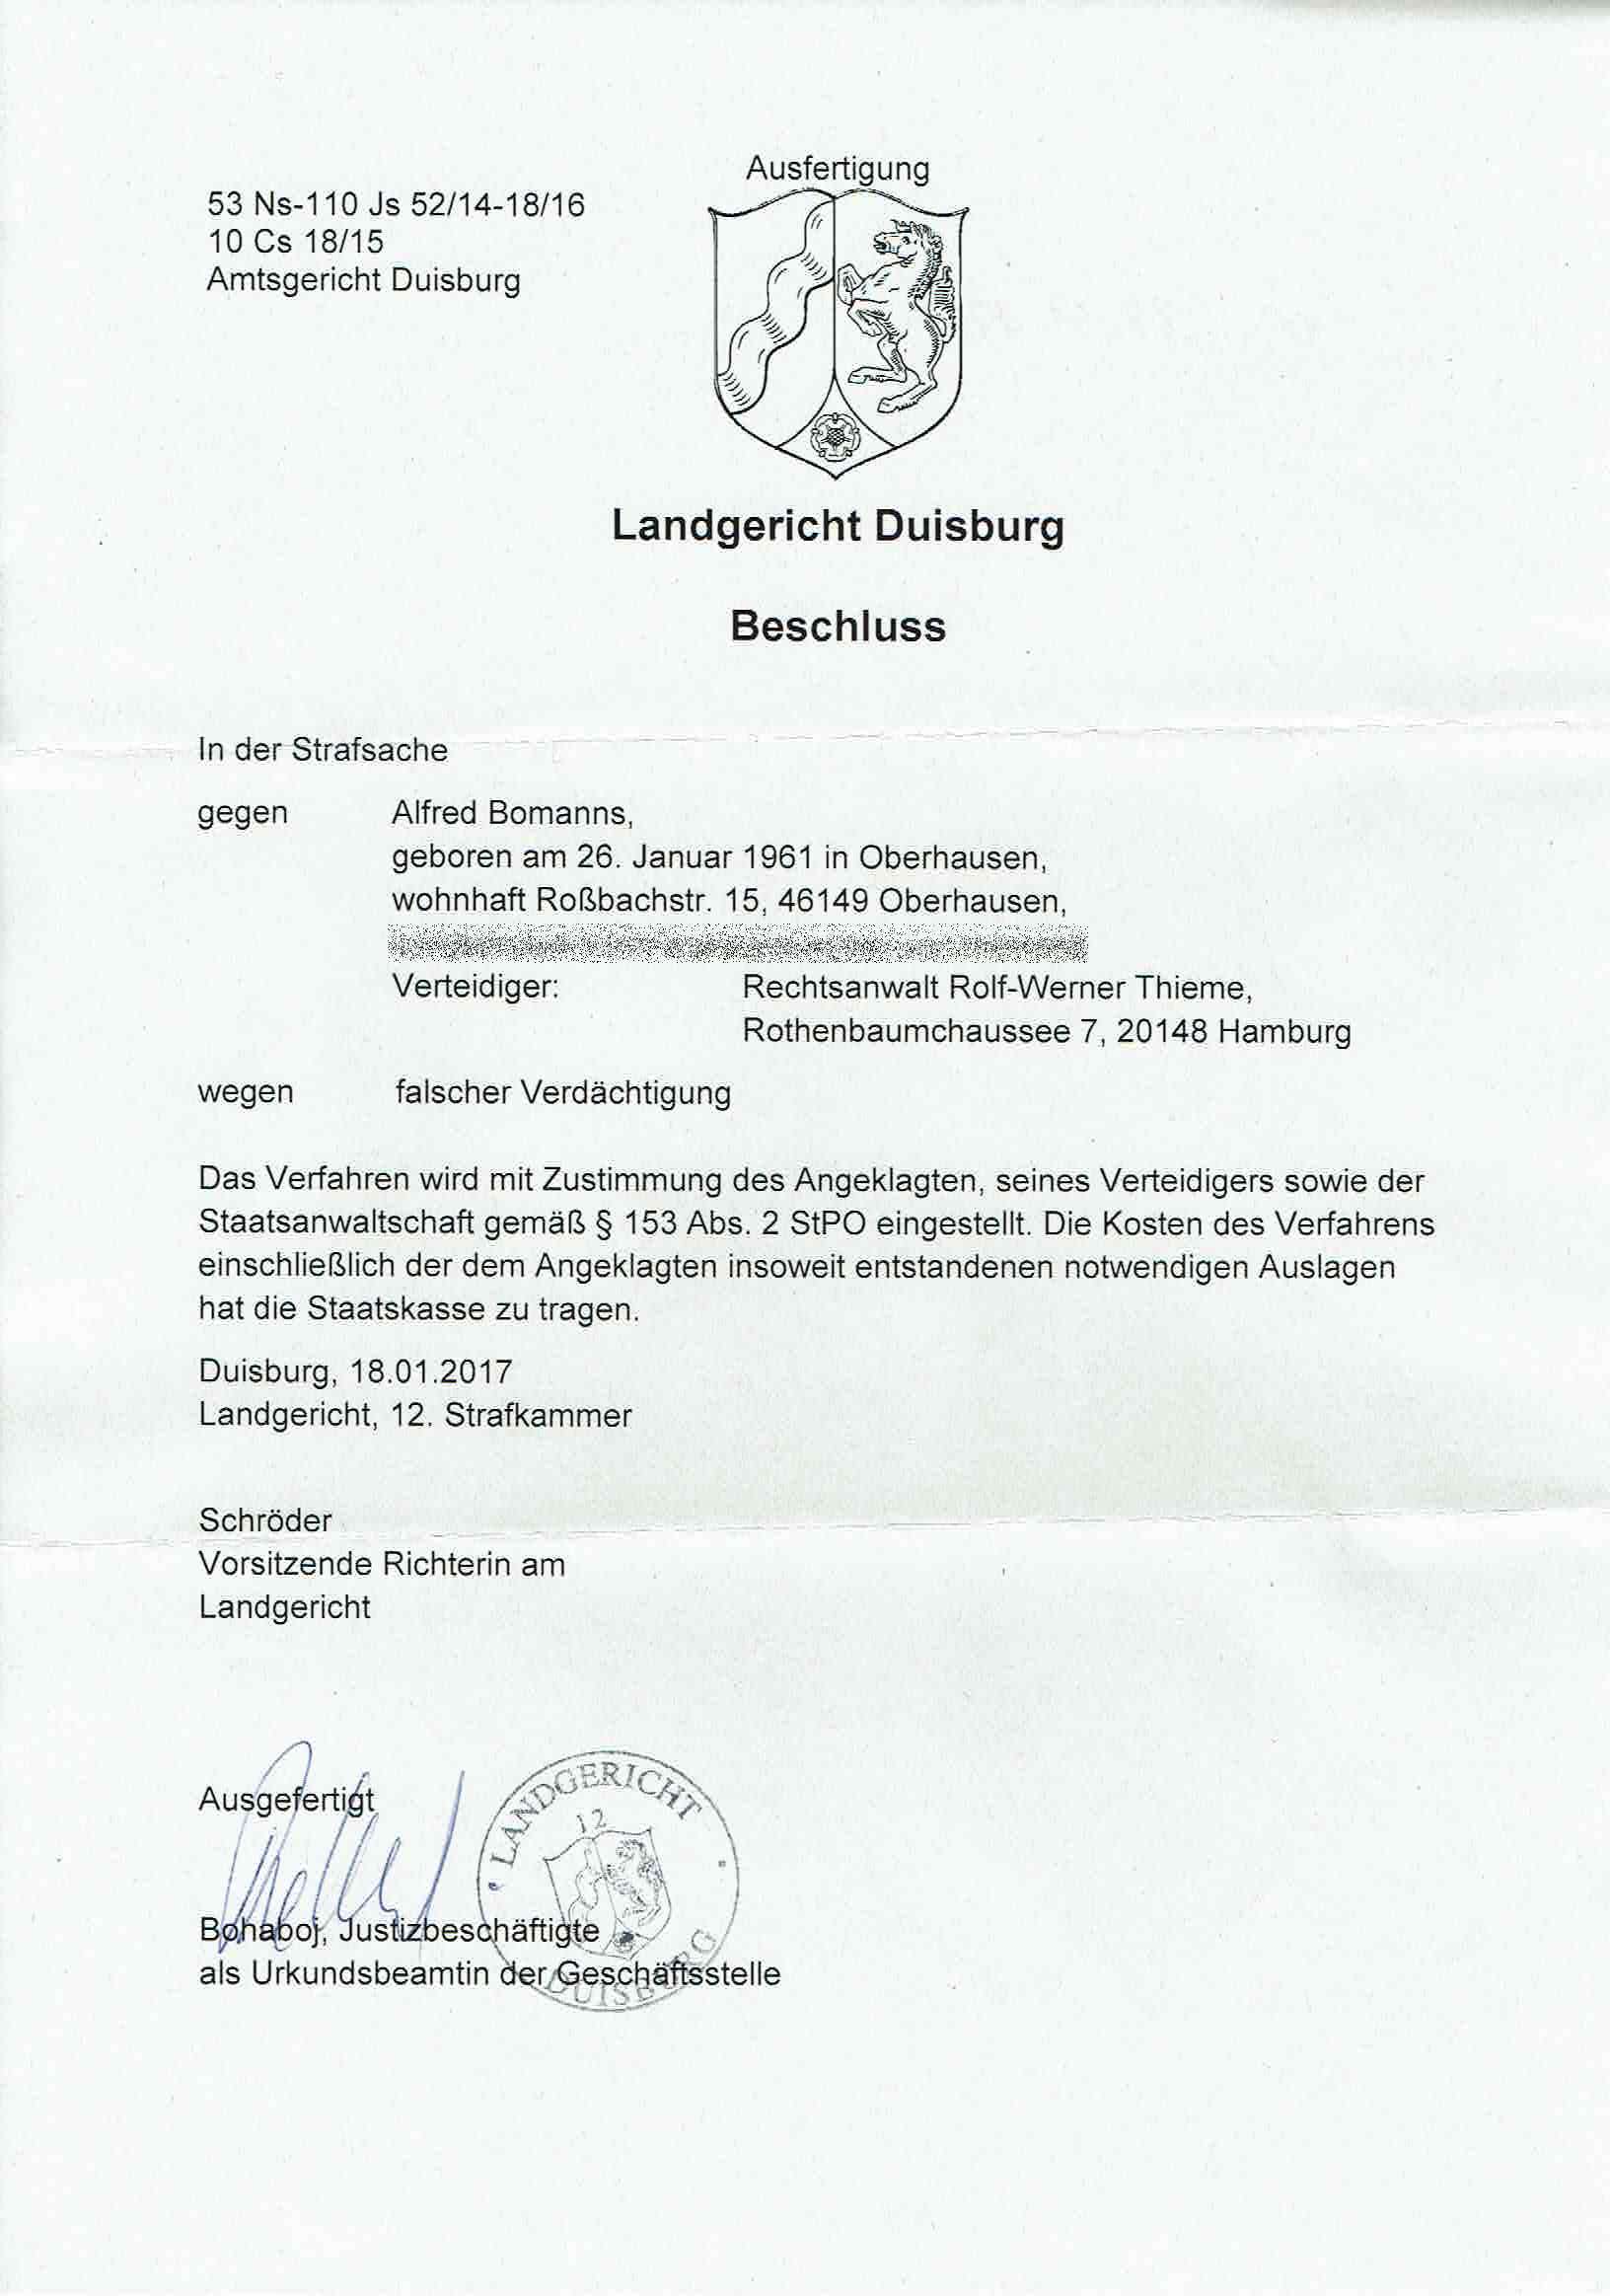 Einstellung des Verfahrens am Landgericht Duisburg vom 18.01.2017